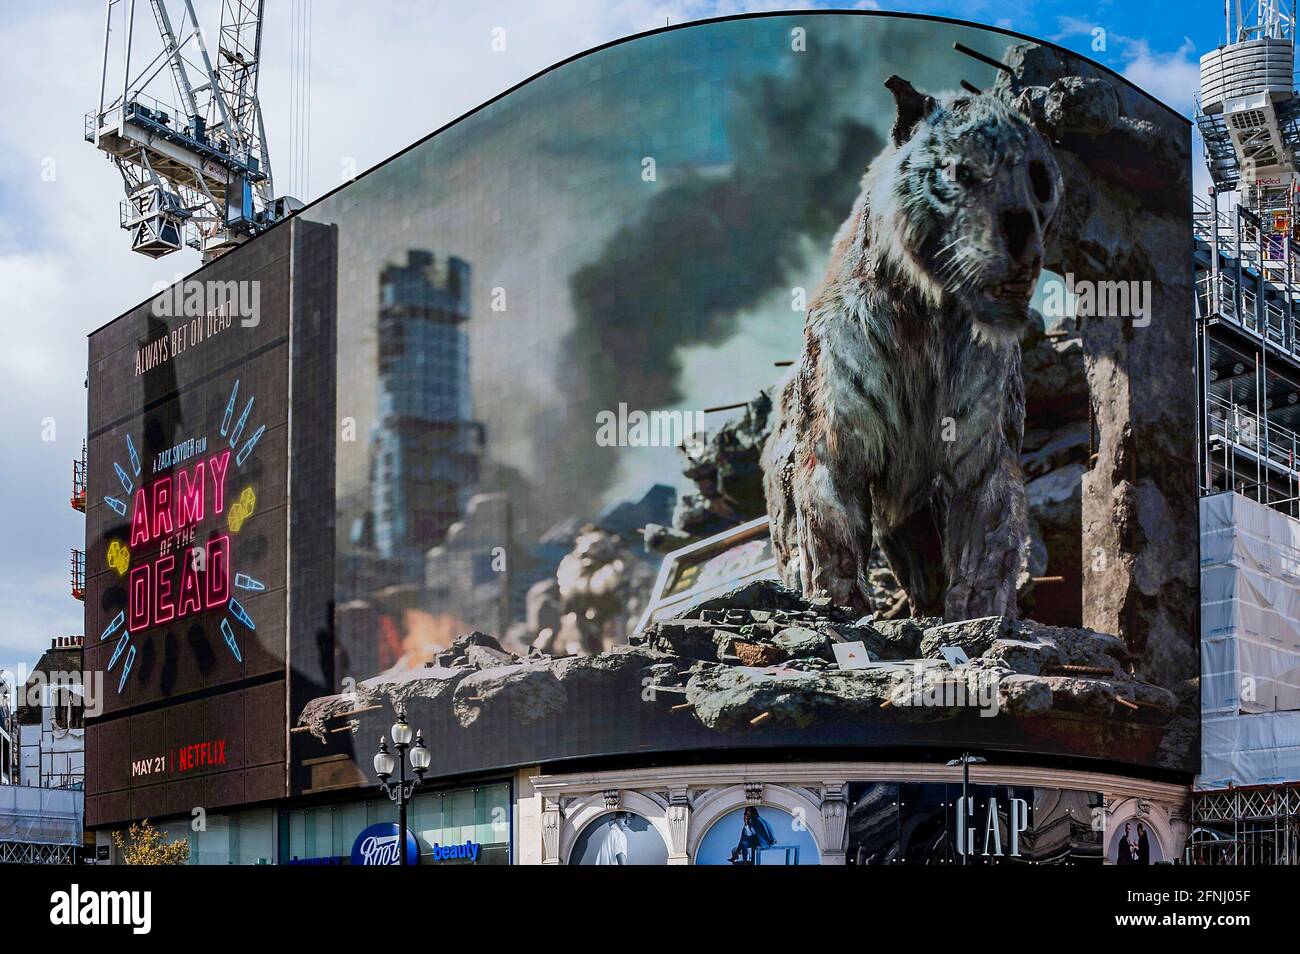 Londres, Royaume-Uni. 17 mai 2021. Le jour où les cinémas sont autorisés à rouvrir, un panneau d'affichage 3-D en direct, Piccadilly Lights, lance l'ARMÉE DU FILM à succès À venir de Zack Snyder (Justice League). En utilisant l'intégralité de l'écran numérique incurvé de Piccadilly Circus, l'activation introduit les Londoniens à "Valentine", le tigre zombie qui apparaît dans le film. Le tigre du VFX, créé par le superviseur des effets visuels Marcus Taormina (Bird Box, Guardians of the Galaxy) en itinérance autour de Las Vegas post-apocalyptique. Crédit : Guy Bell/Alay Live News Banque D'Images